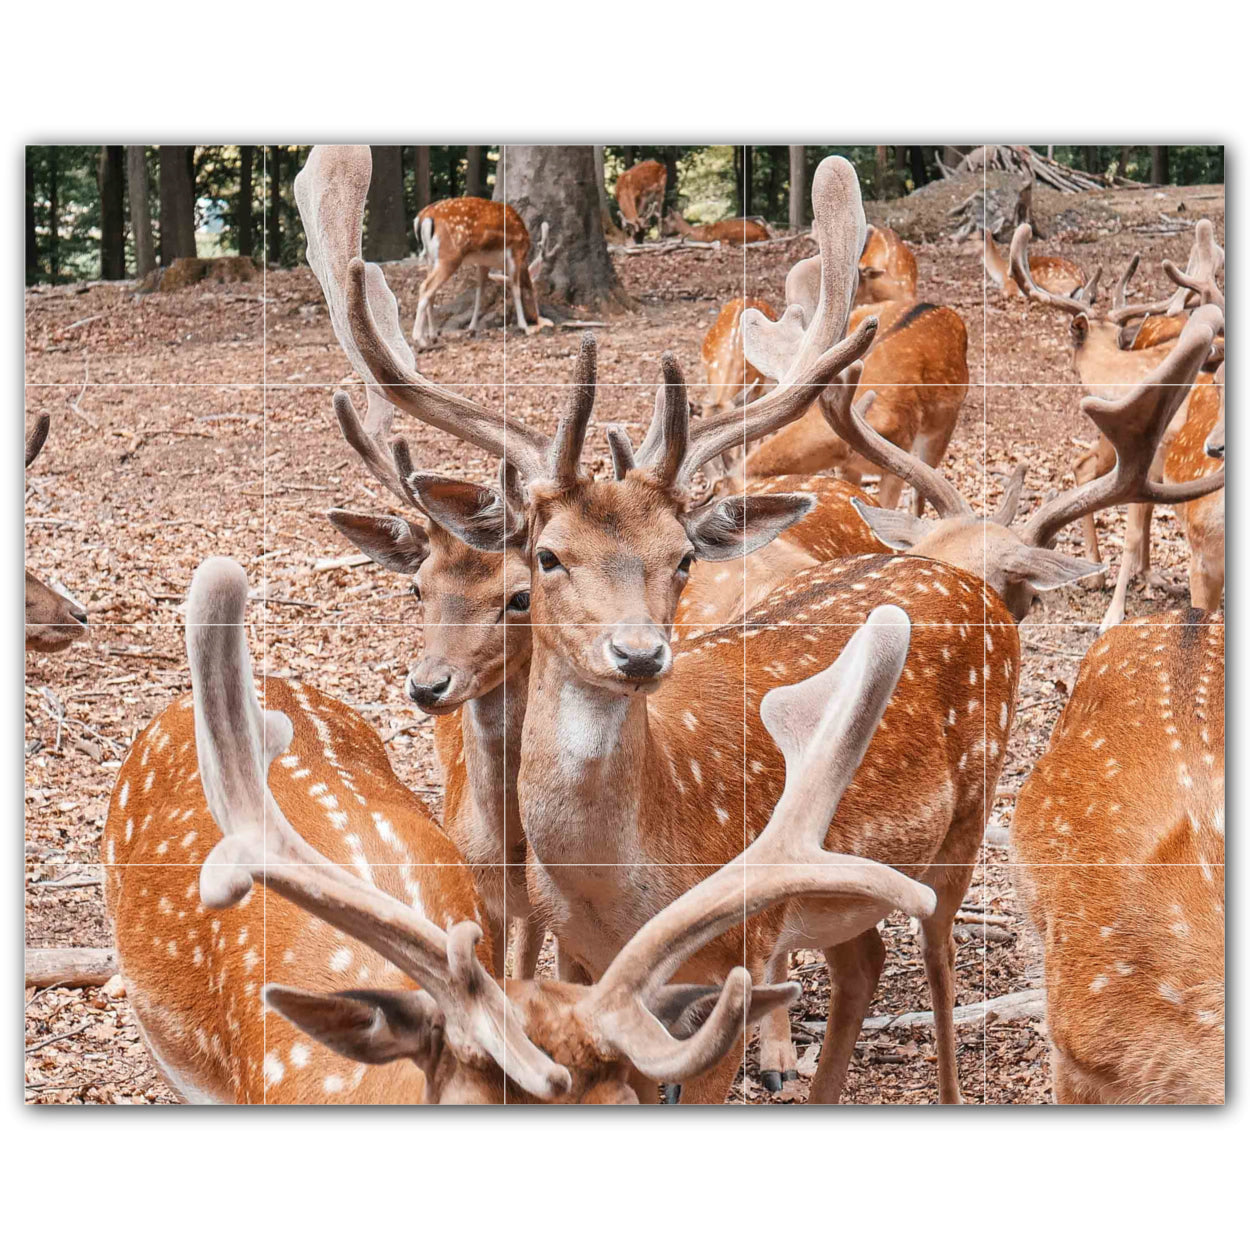 Deer Photo Tile Murals